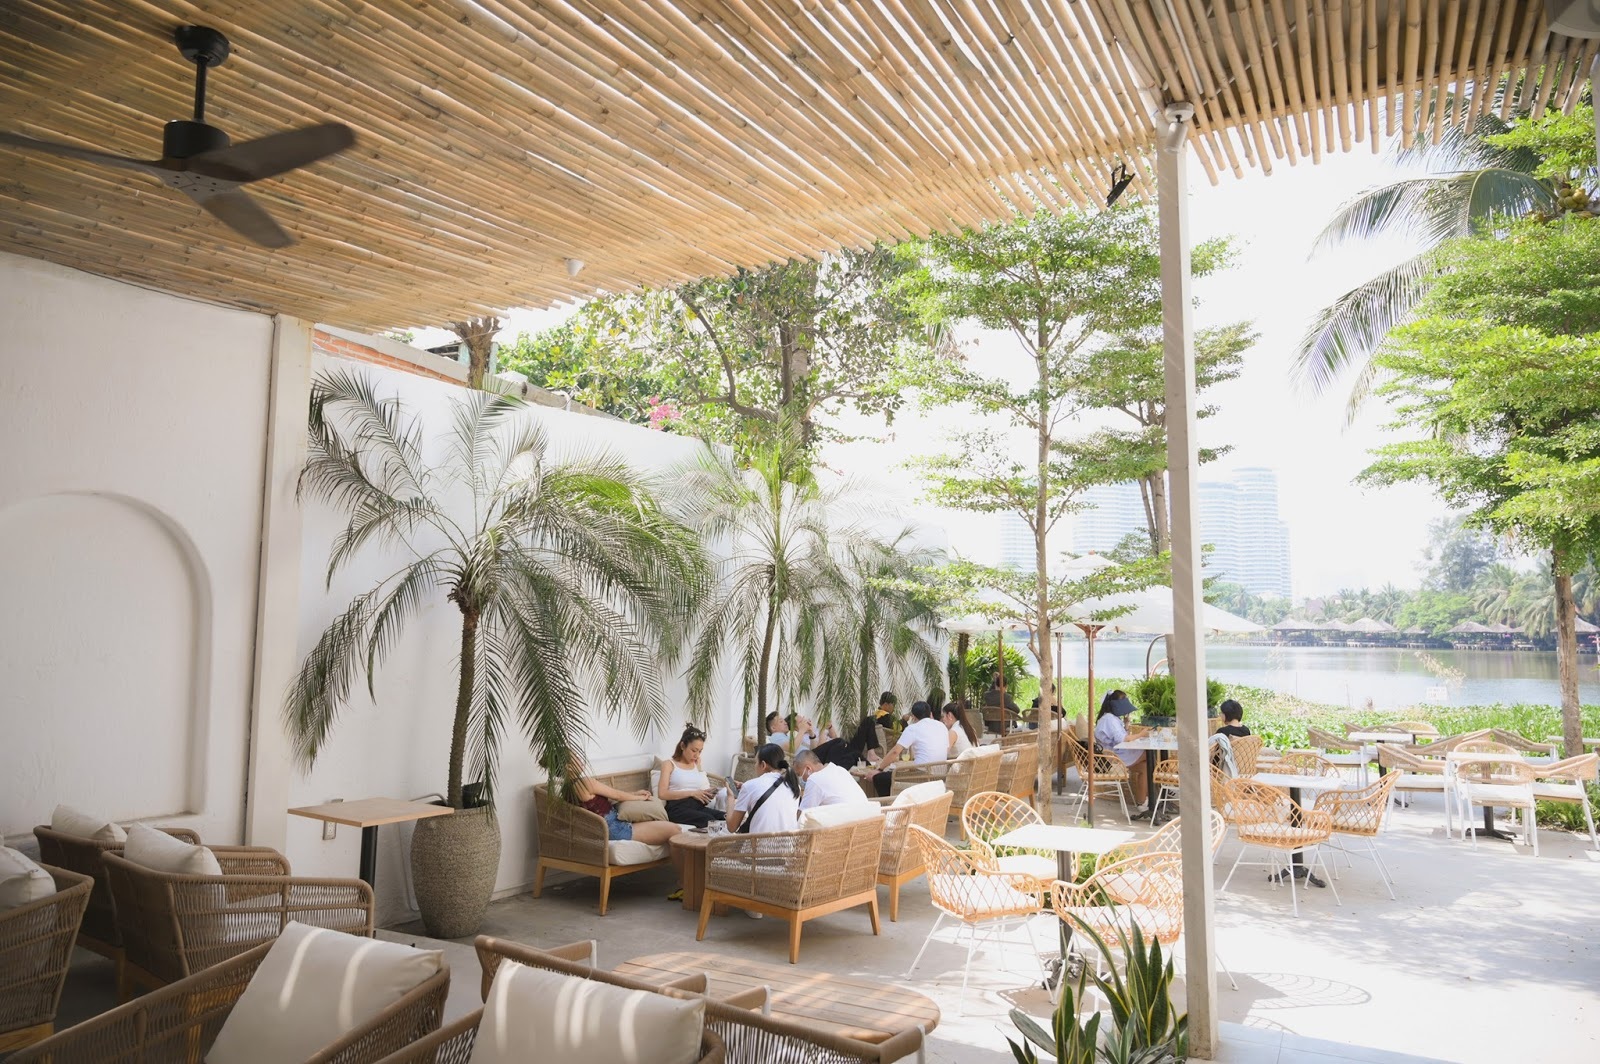 4 quán cà phê phong cách nhiệt đới đẹp như trời Âu hút khách ở Sài Gòn - 2